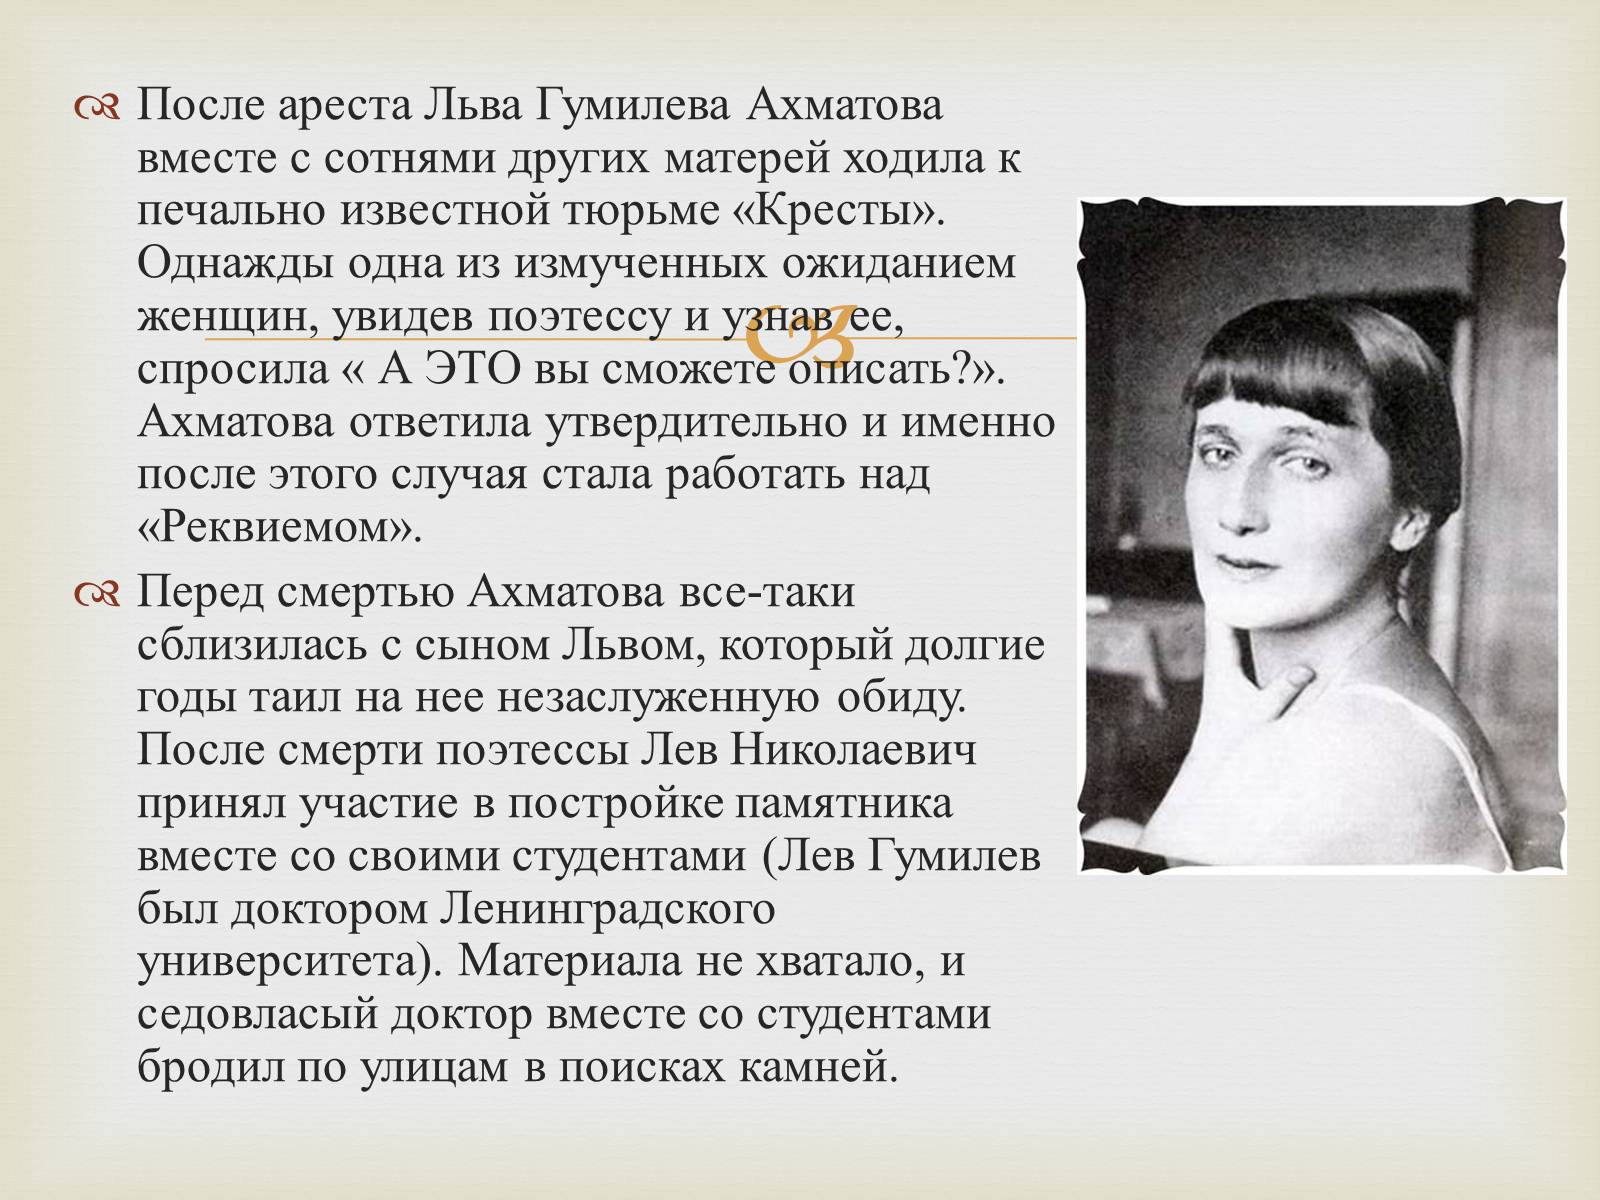 Пересказ ахматовой. Ахматова поэтесса. Ахматова и Гумилев. Личная жизнь Ахматовой кратко.